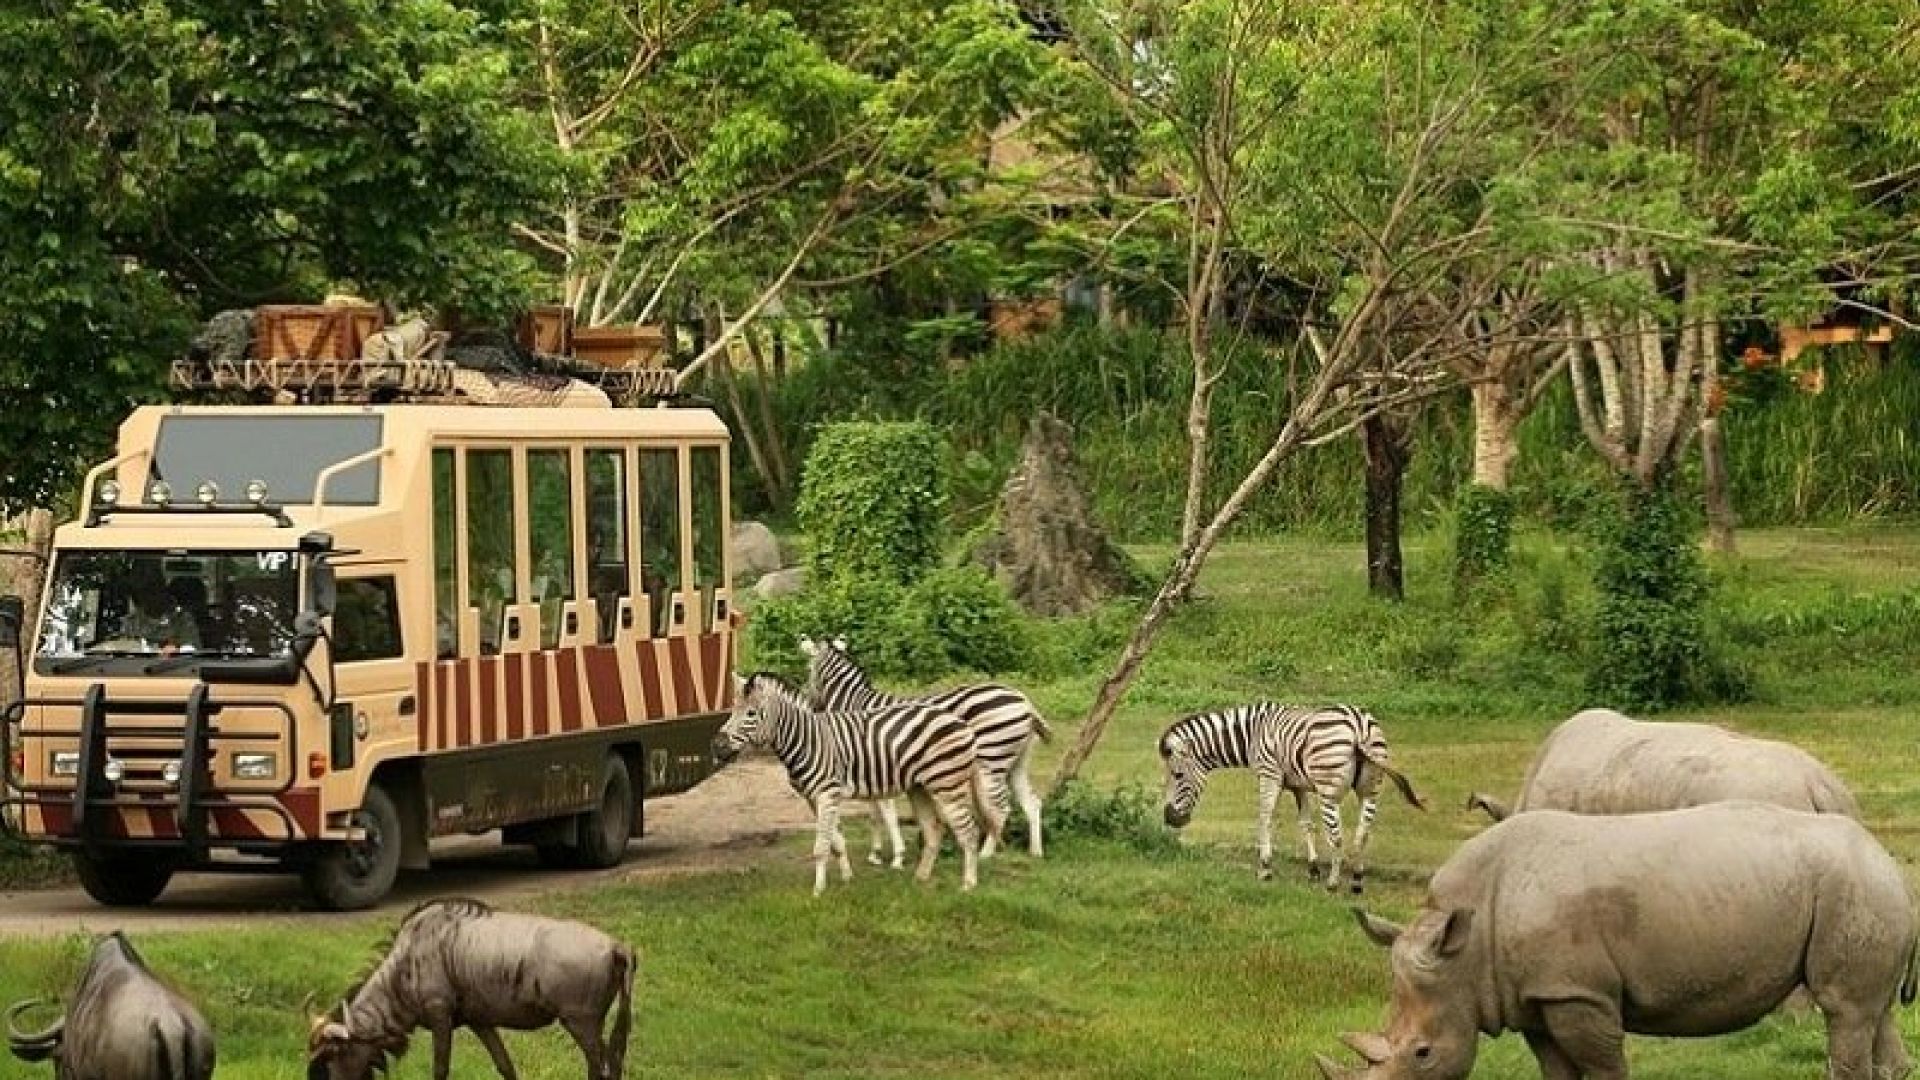 safari world bangkok cost